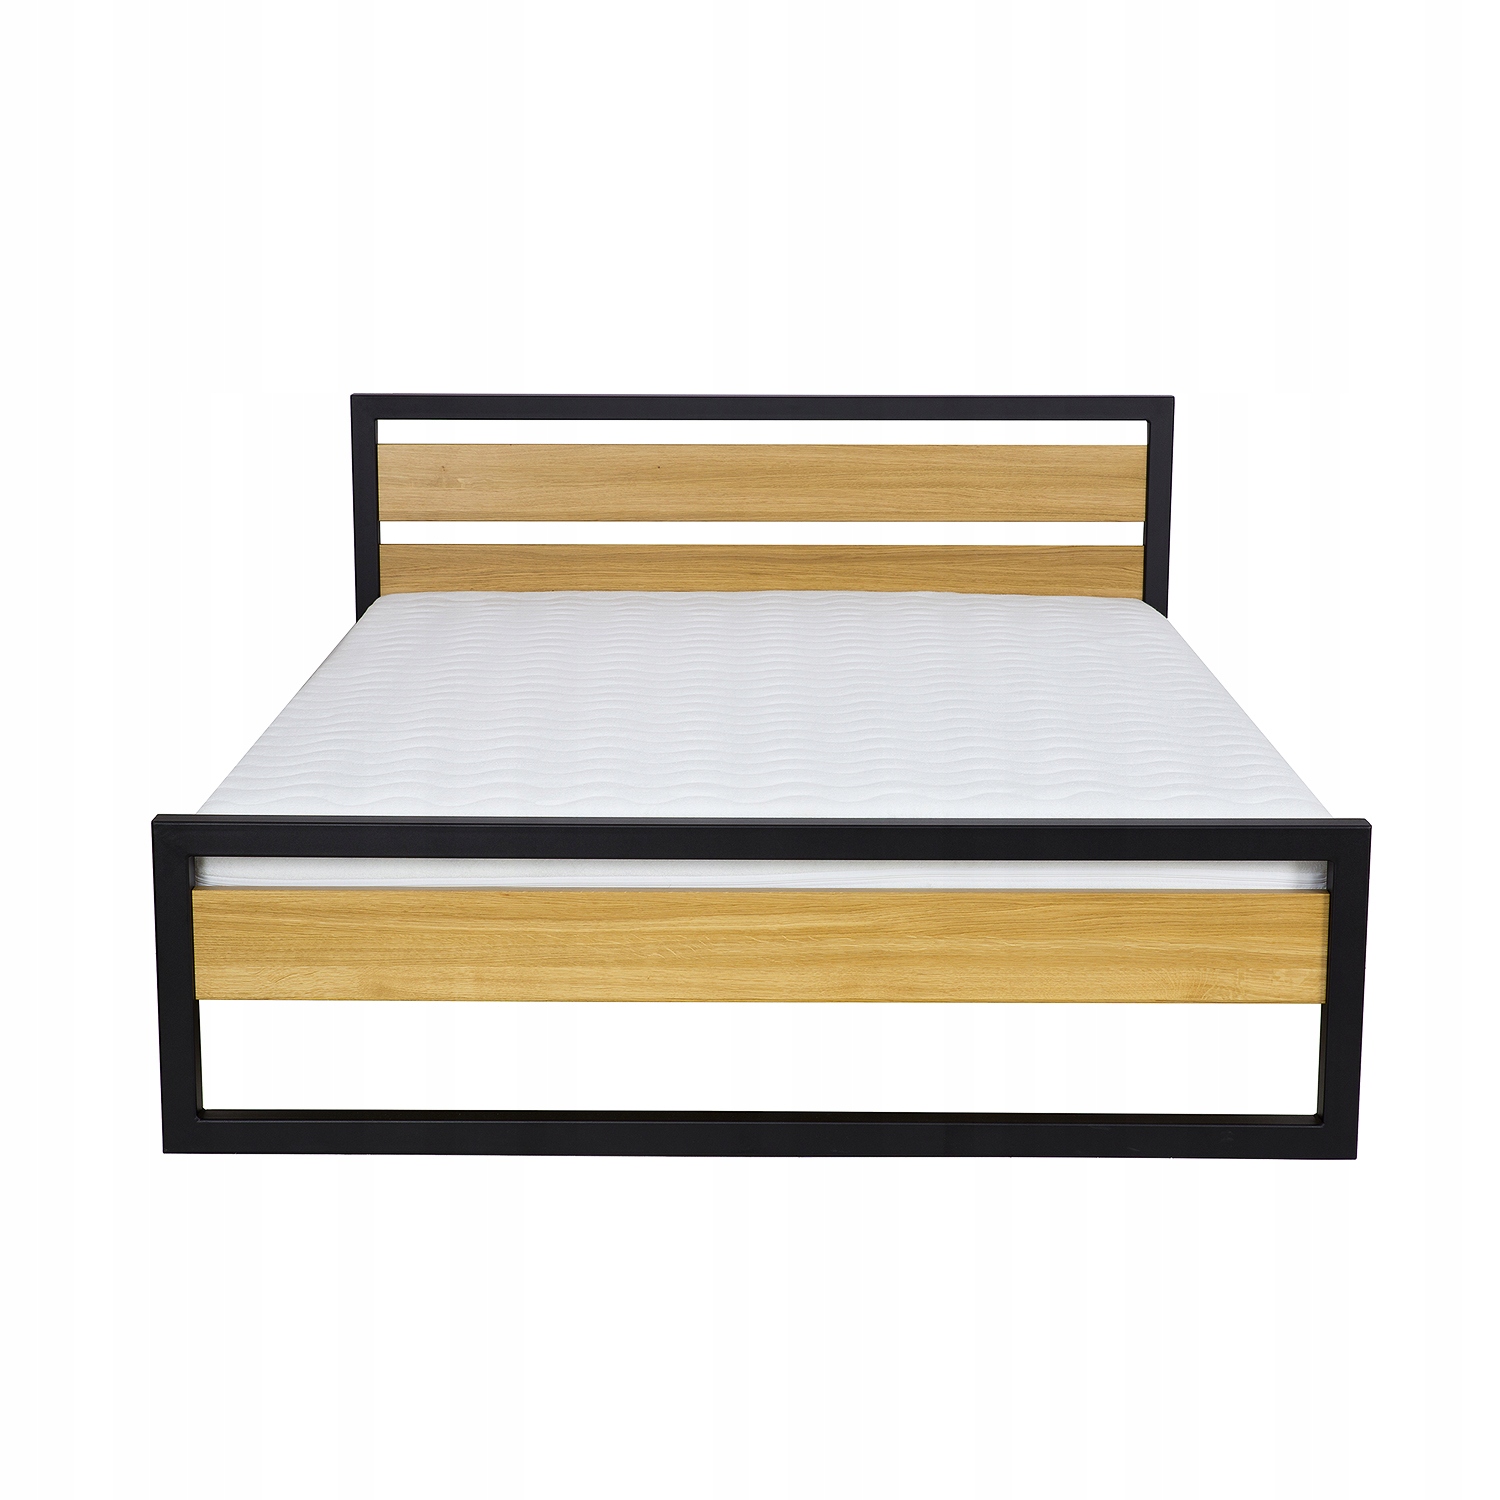 Kovová postel 180x200 dřevěná, loftová za 16453 Kč - Allegro